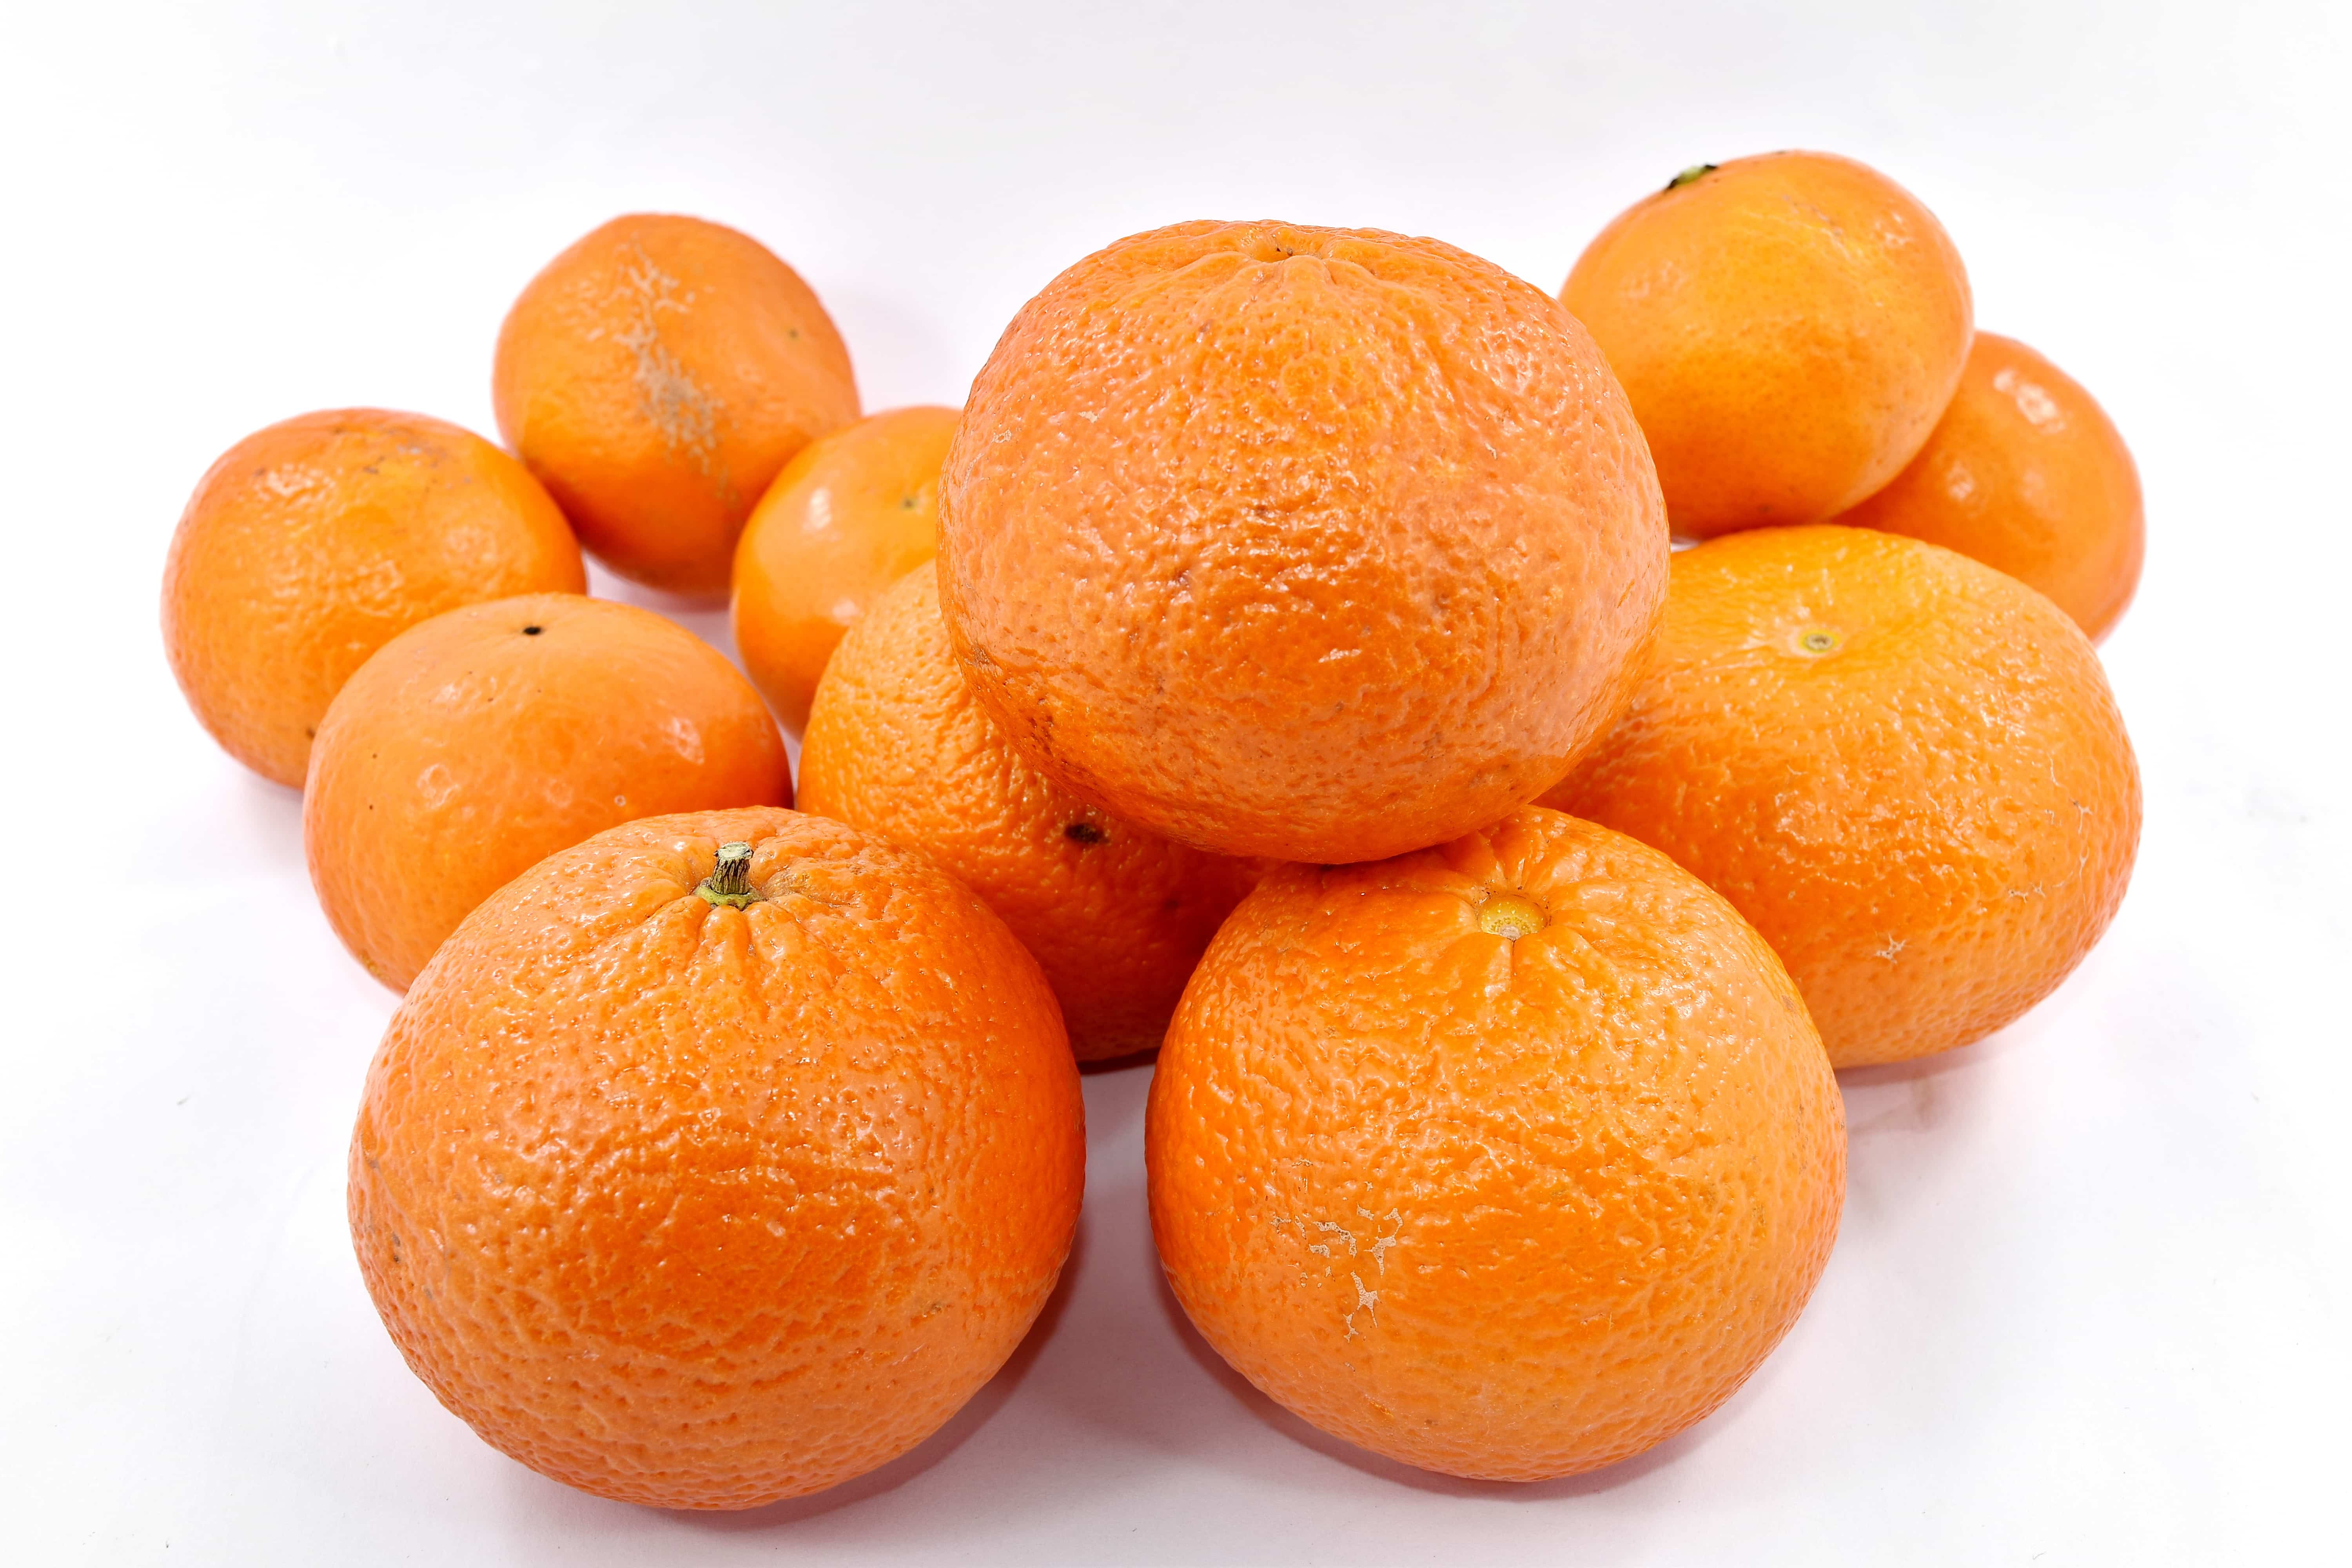 フリー写真画像 農業 グループ オレンジの皮 オレンジ 製品 肌 全体 甘い オレンジ フルーツ